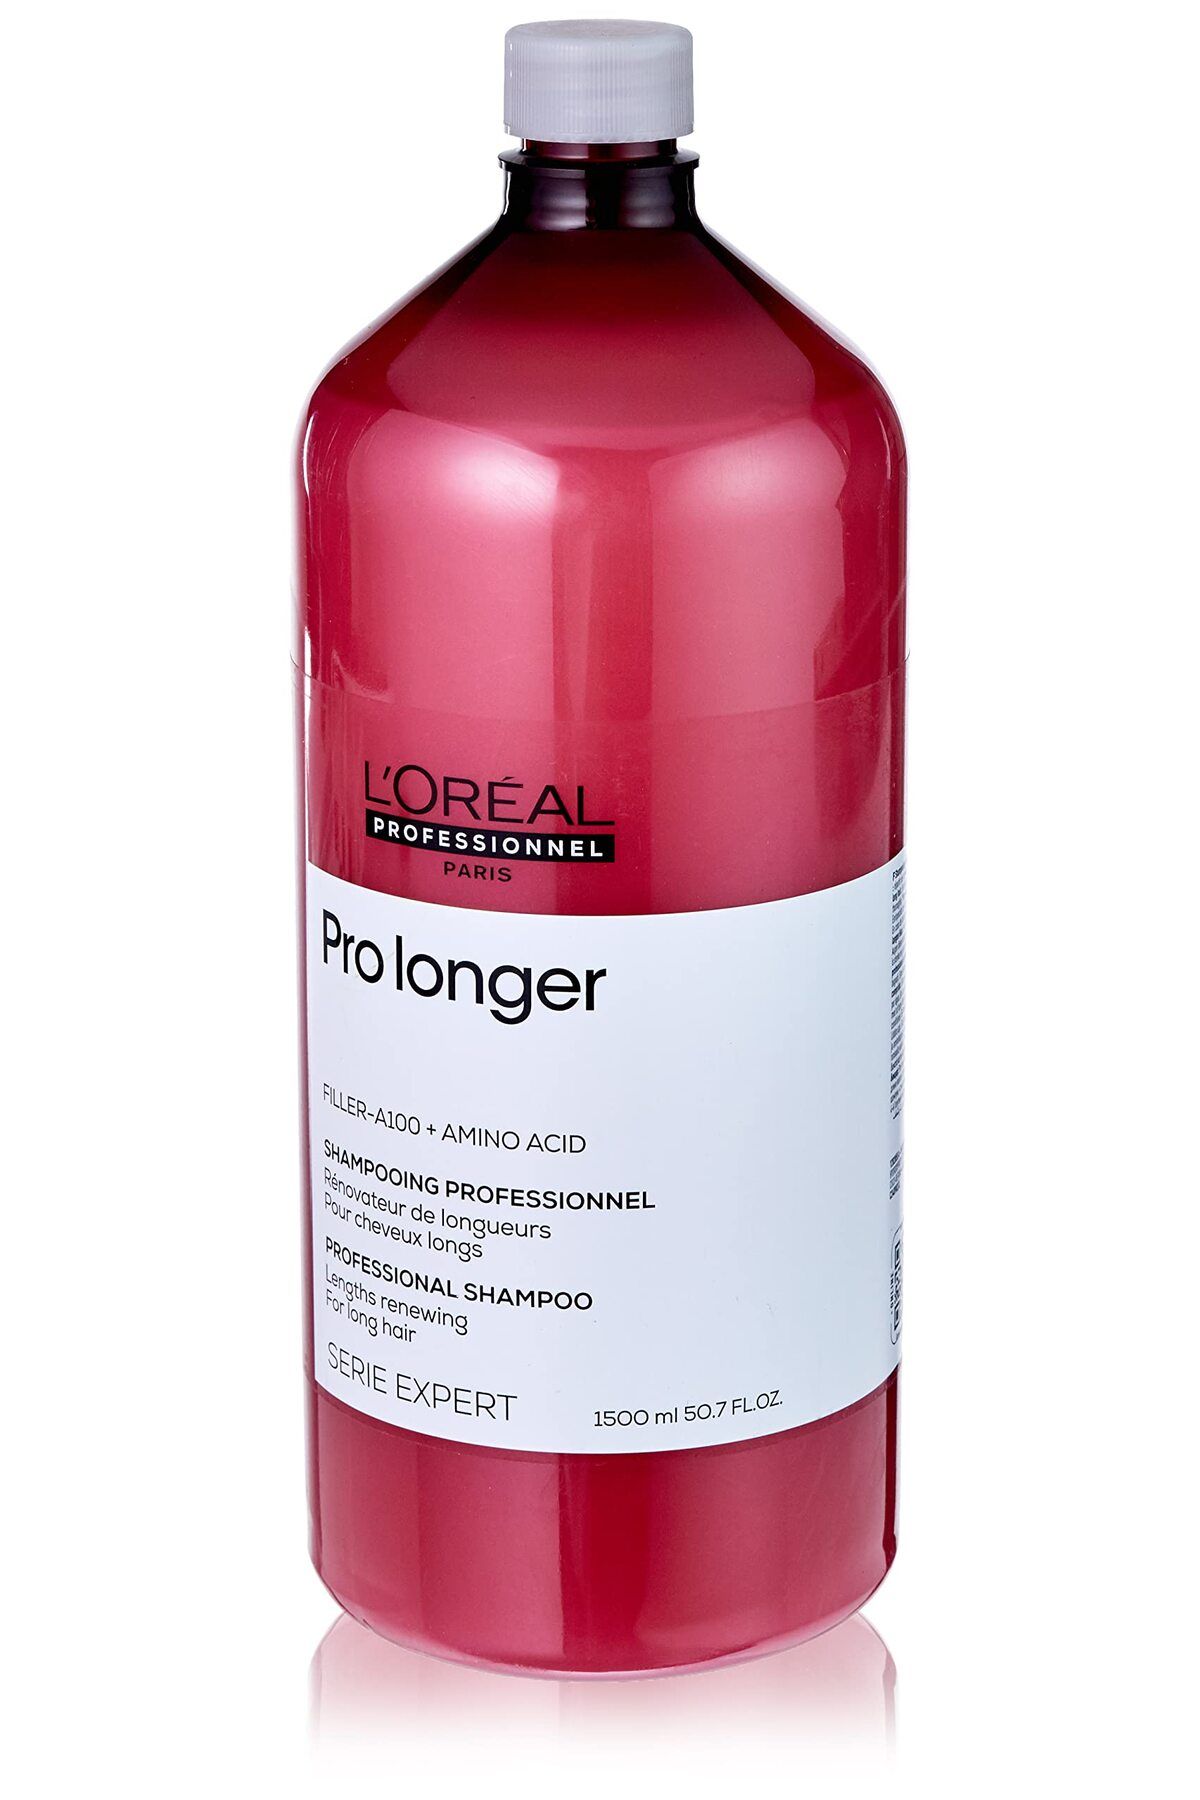 L'oreal Professionnel Loreal Serie Expert Pro Longer Uzun Saçlar İçin Geliştirilmiş Bakım Şampuanı 1500 ml CYT646136461336